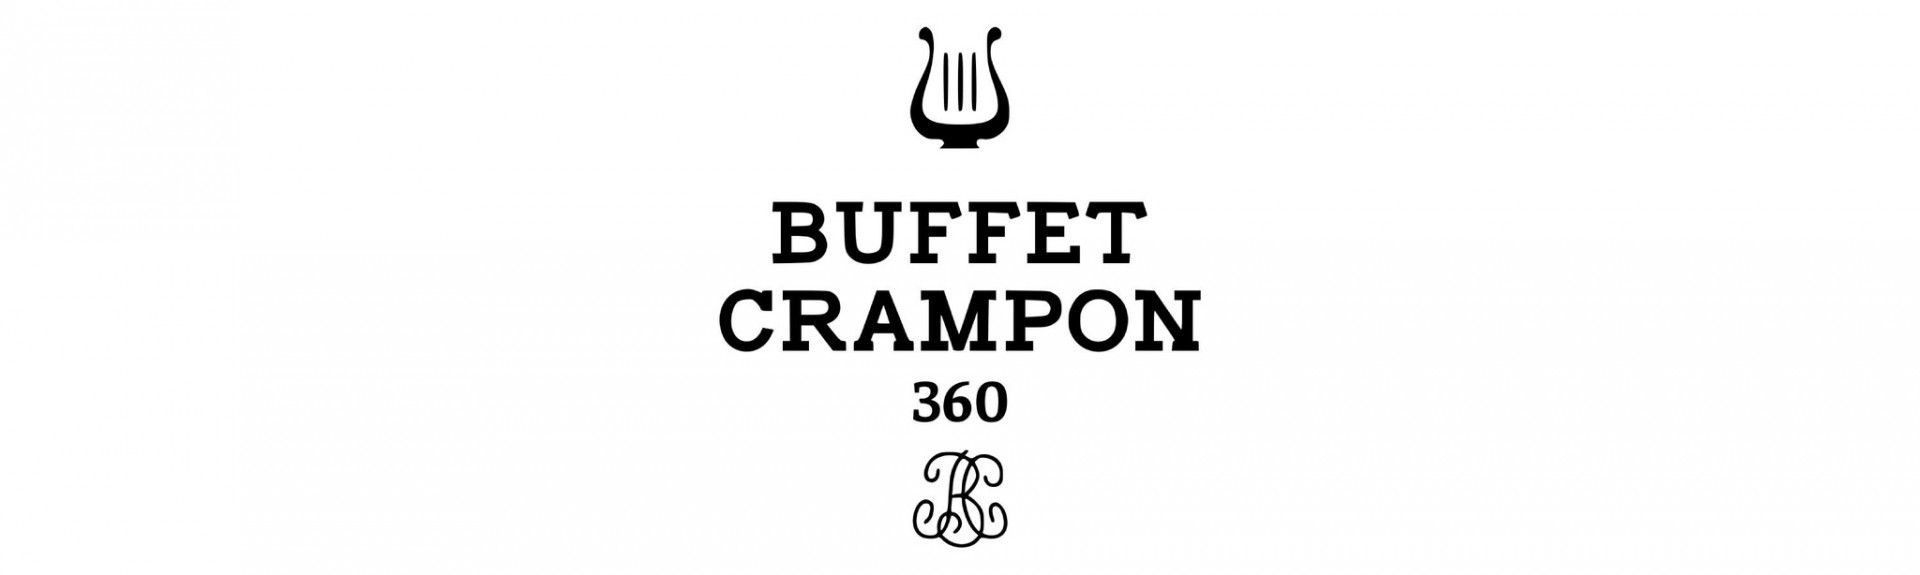 Buffet Crampon 360